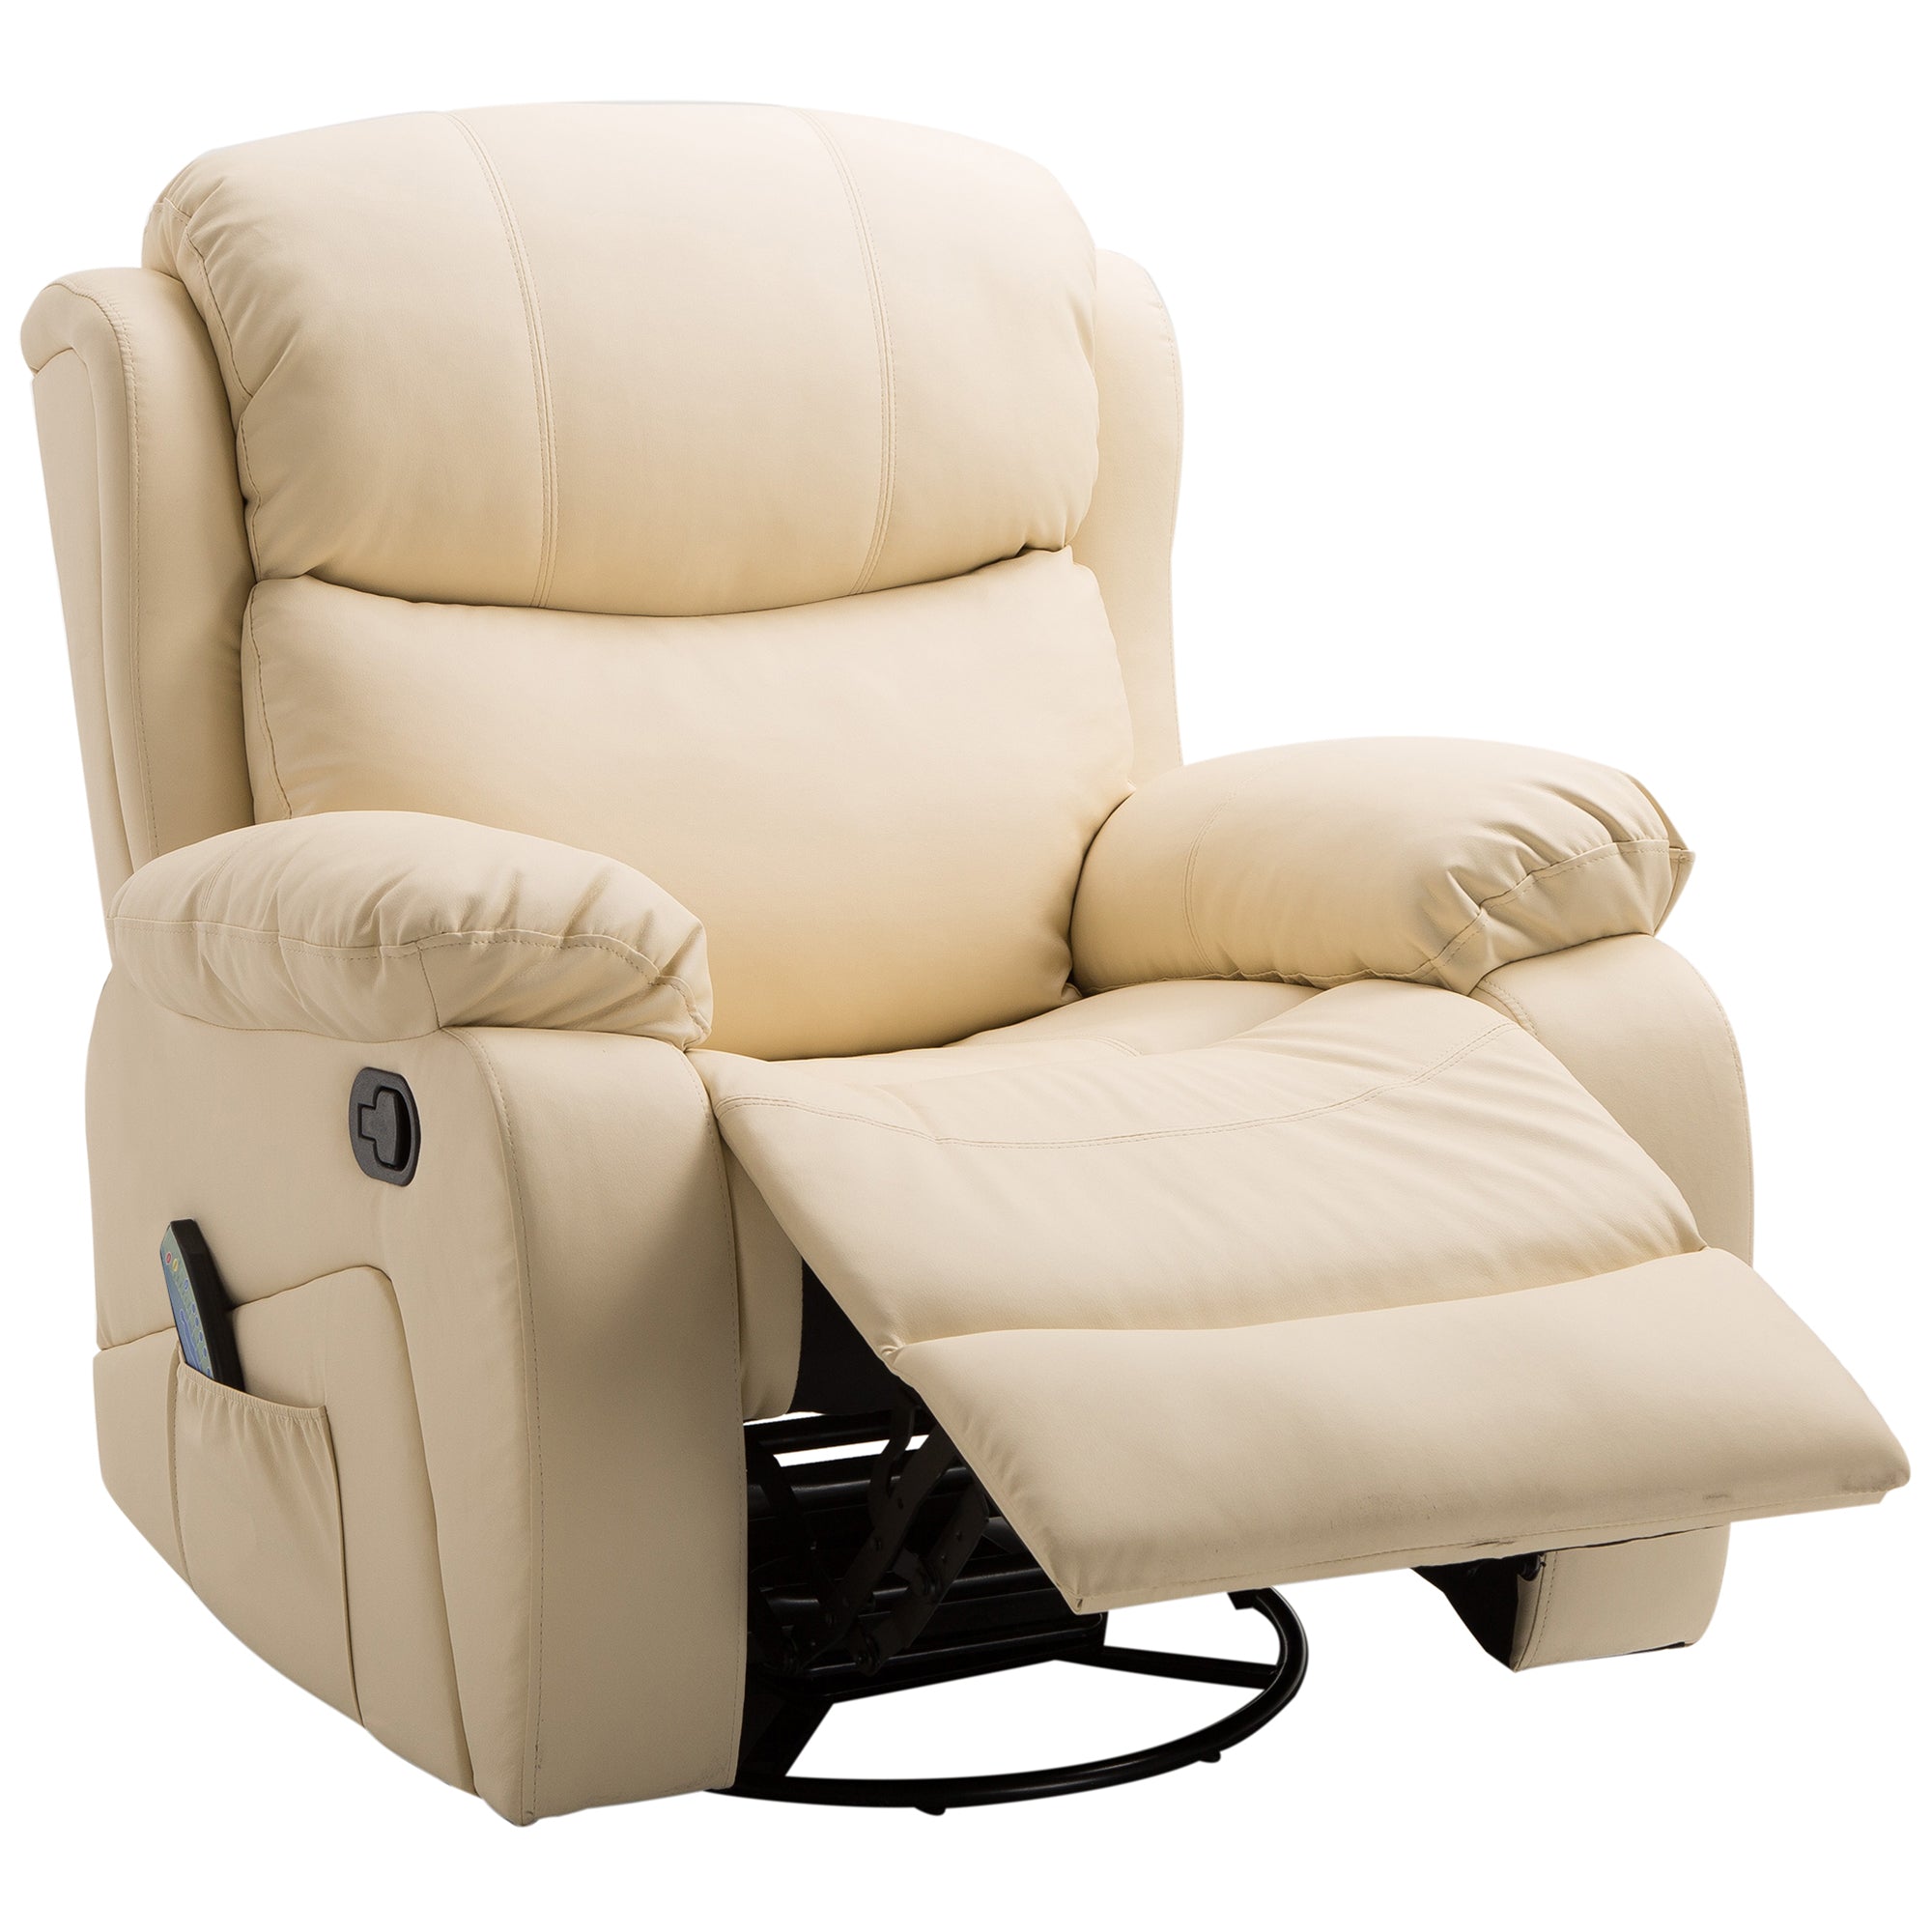 EASYCOMFORT Poltrona Relax Reclinabile fino 135° con Seduta Girevole e Pouf  Poggiapiedi, 78x84x110cm, Crema